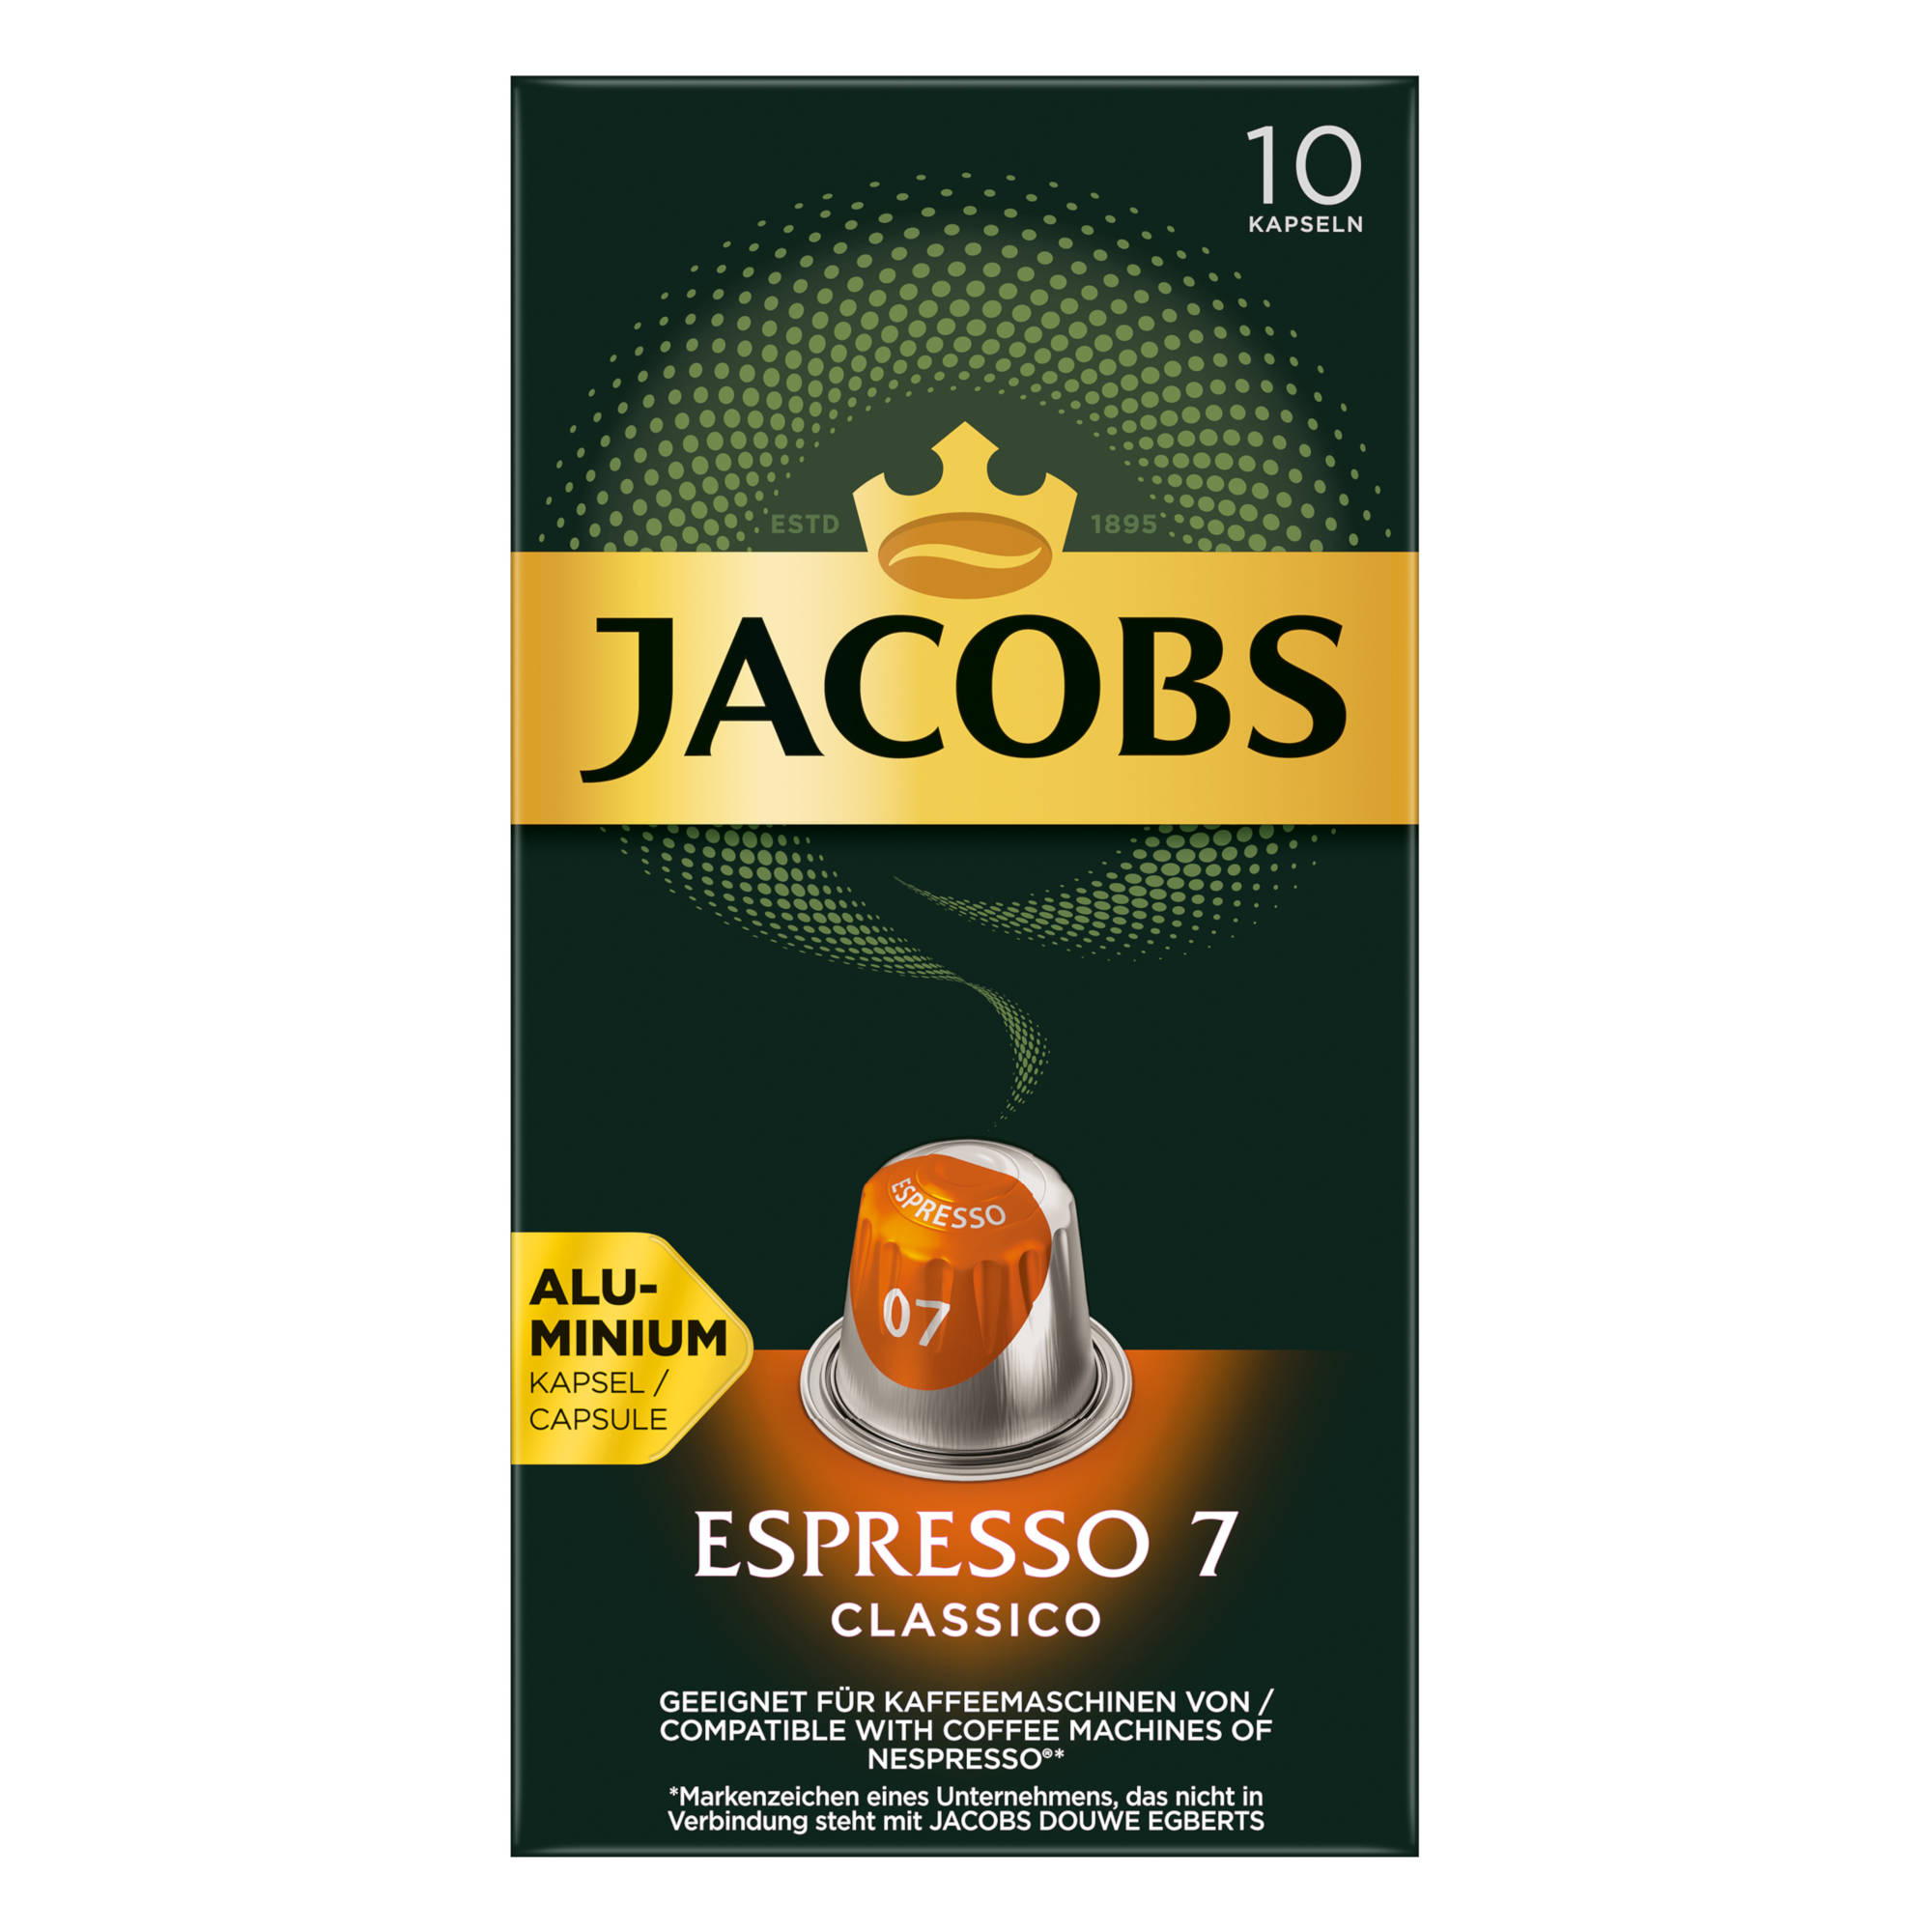 JACOBS Espresso kompatible Classico System) 10 (Nespresso Kaffeekapseln Nespresso®* 10 x 7